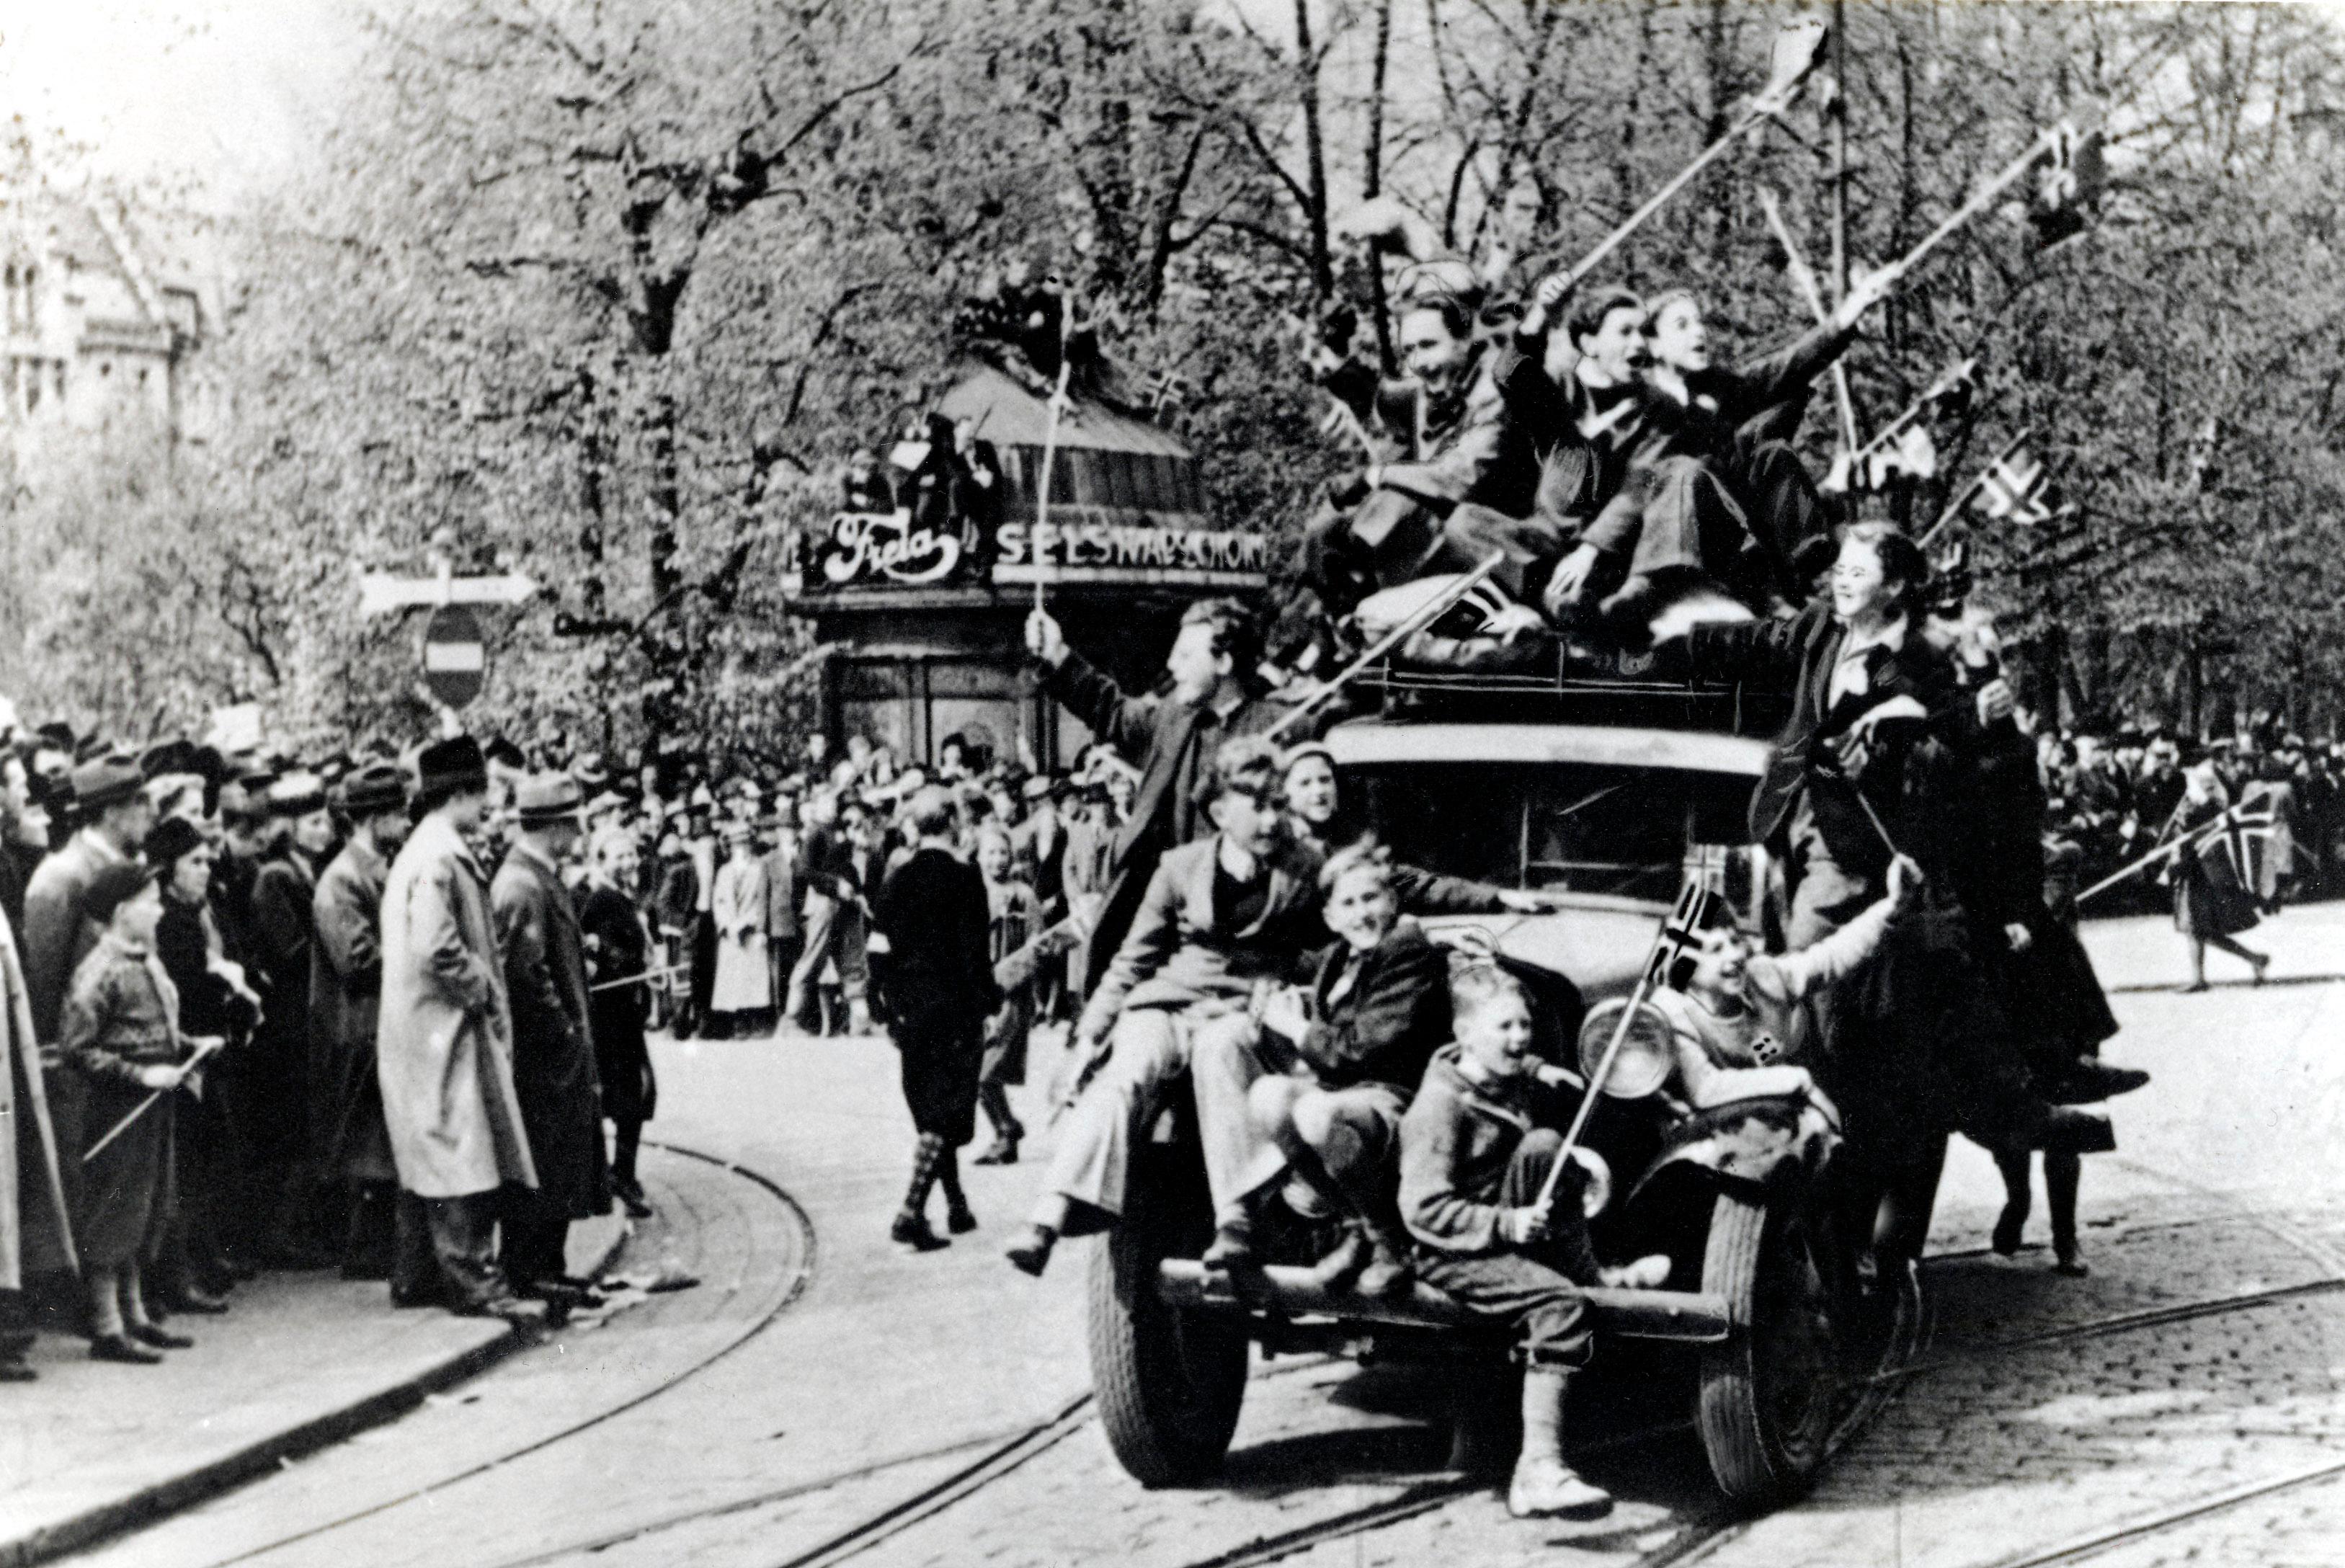 Oslo 19450508:  Fredsdagene mai 1945. Frigjøringsdagen 8. mai, jubel på Karl Johans gate. Biler fulle av jublende mennesker med norske flagg, folkemengder i gatene.
Foto: NTB / Scanpix